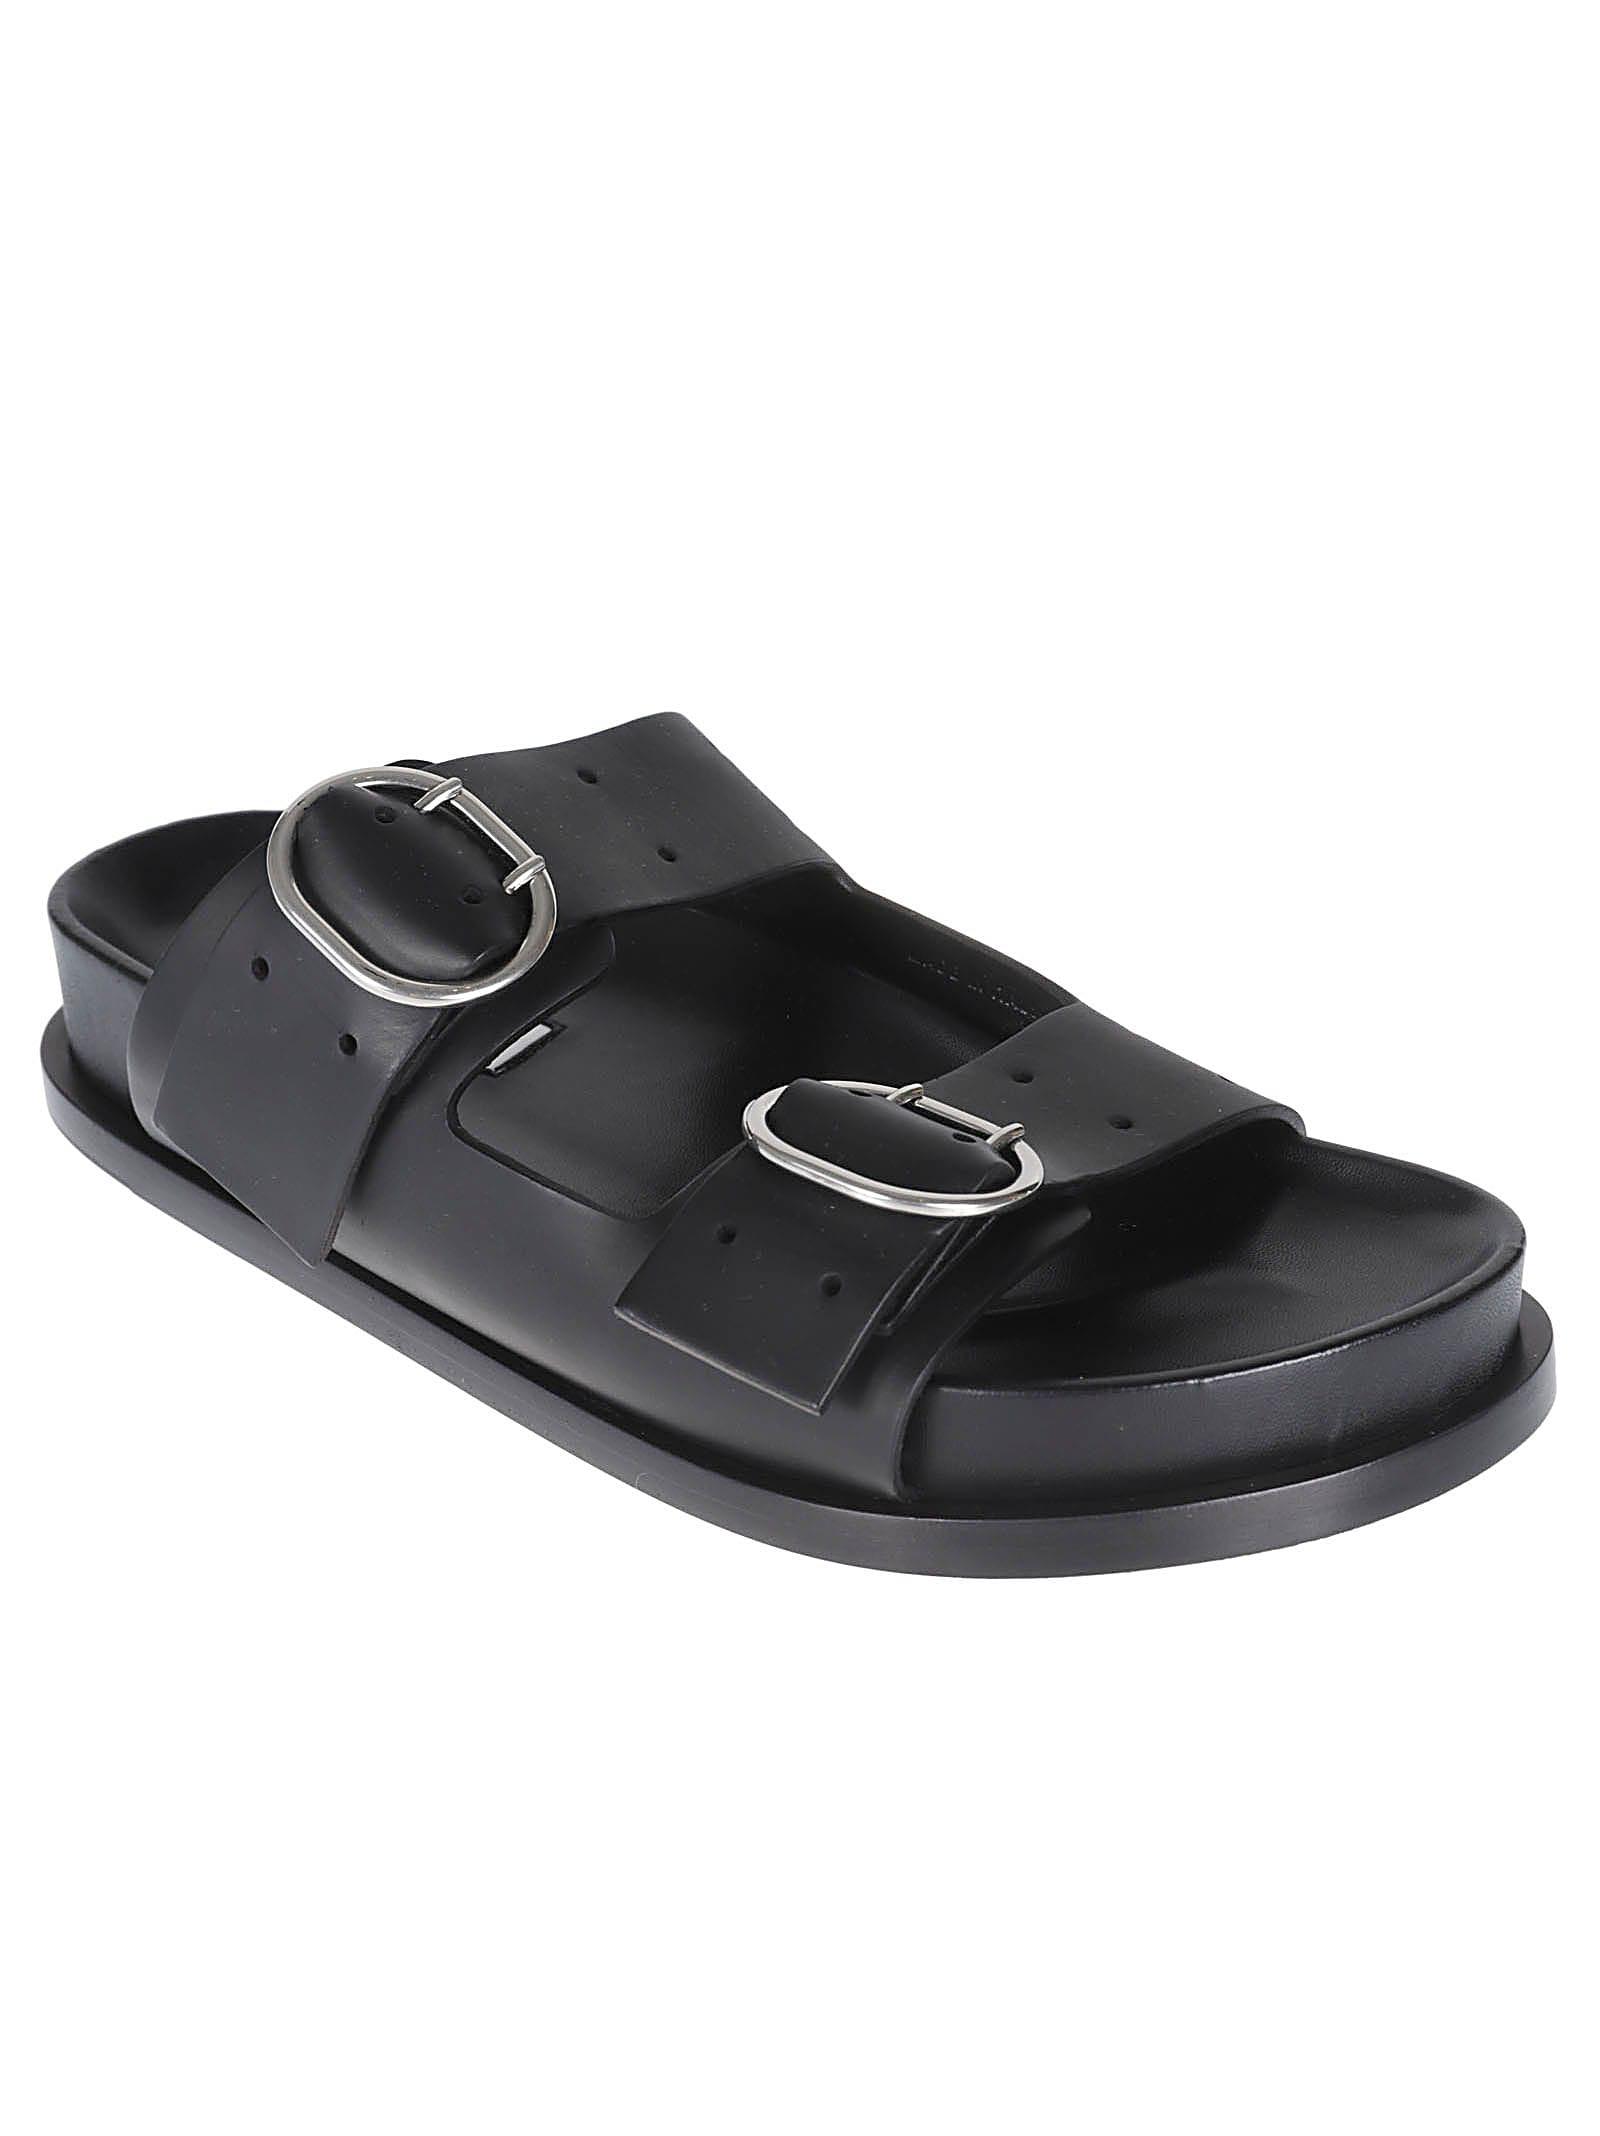 Jil Sander Double Buckle Sandals in Black | Lyst